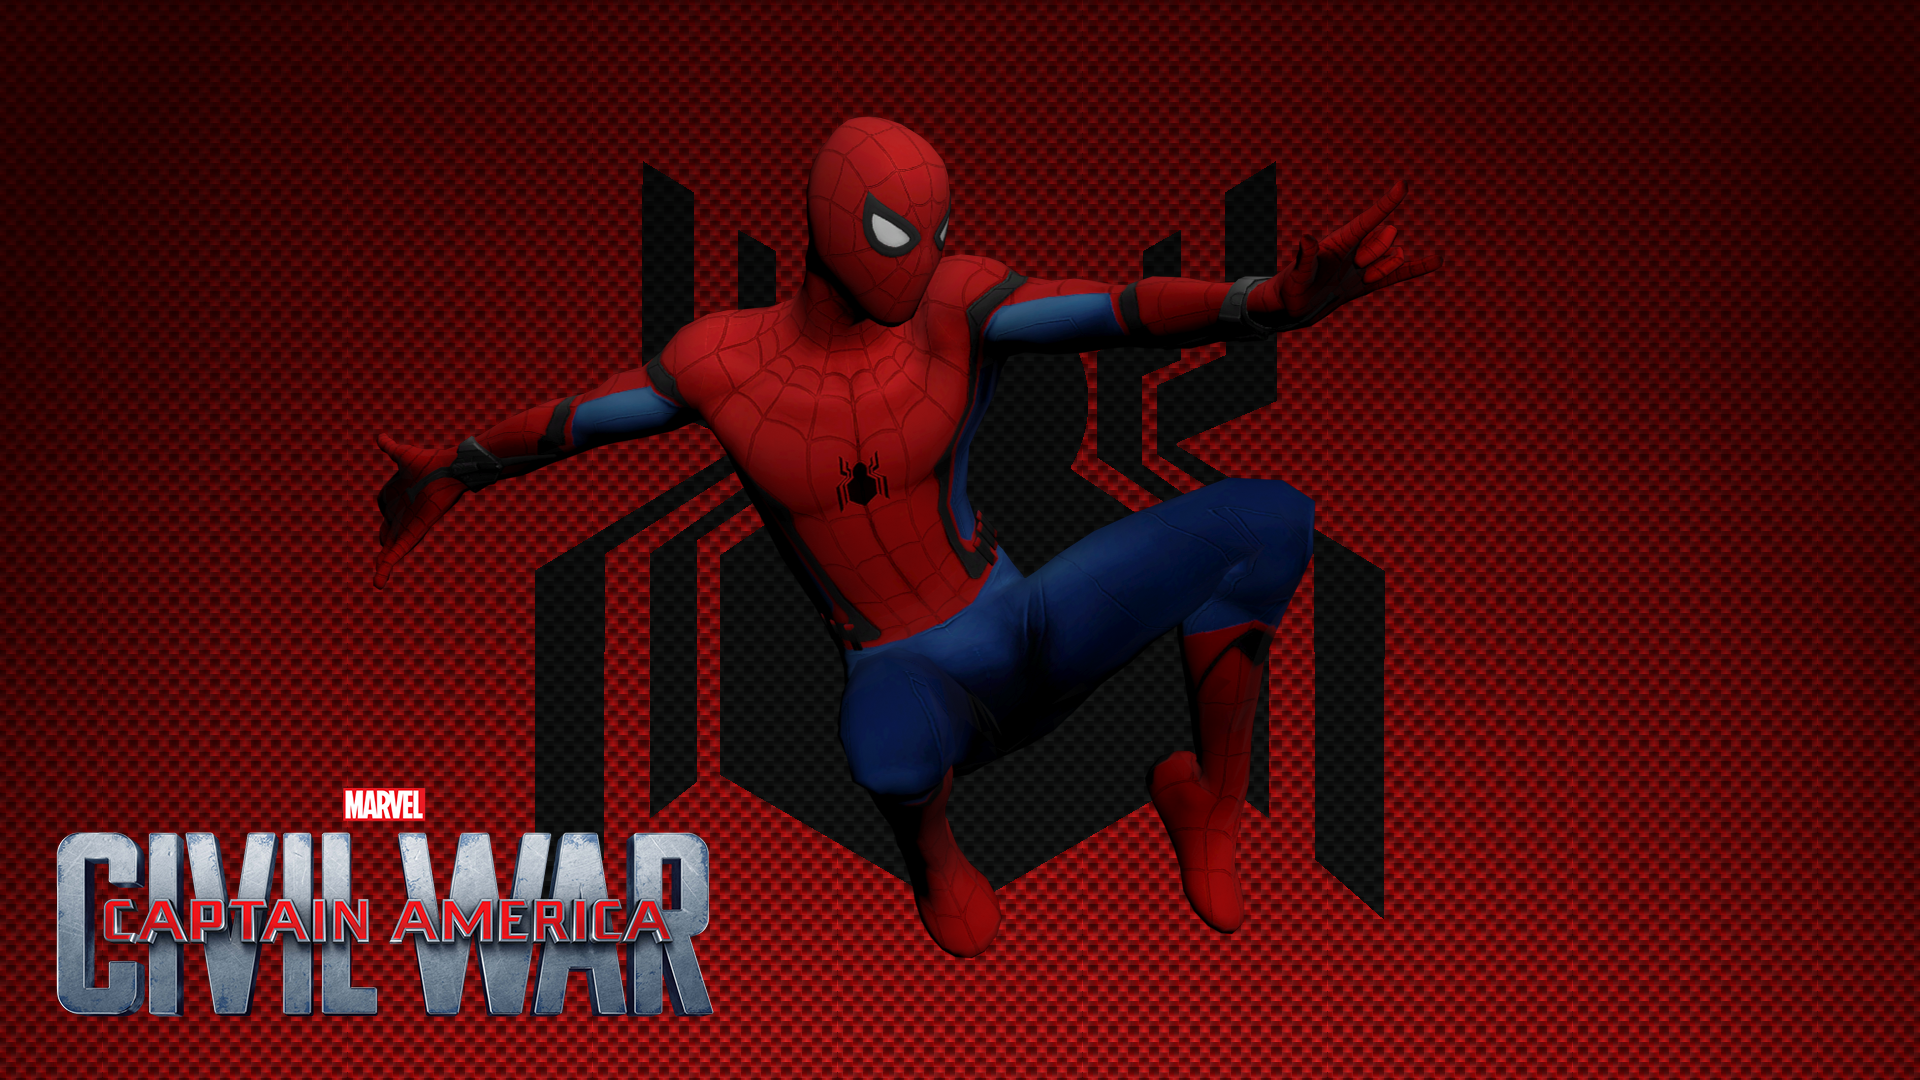 Spider-Man Civil War Wallpaper (RENDER) by CR1T3R10N on DeviantArt